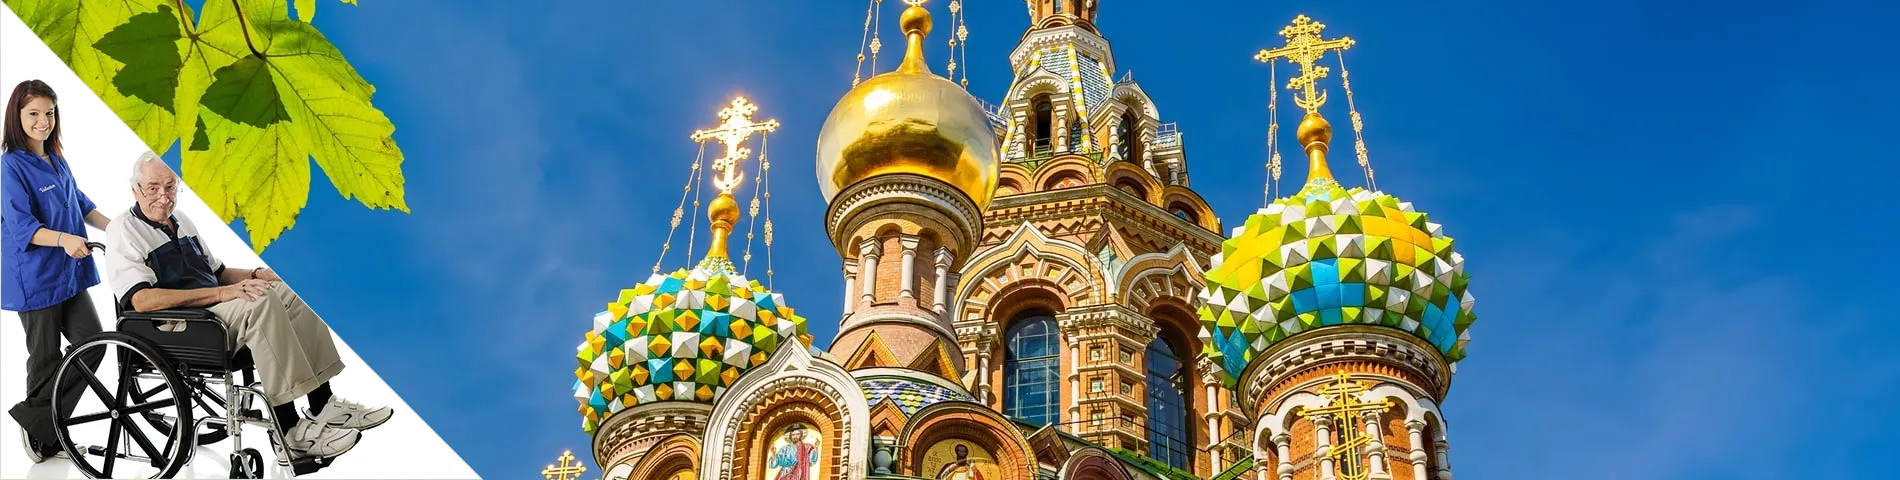 Санкт-Петербург - Русский и волонтерство 